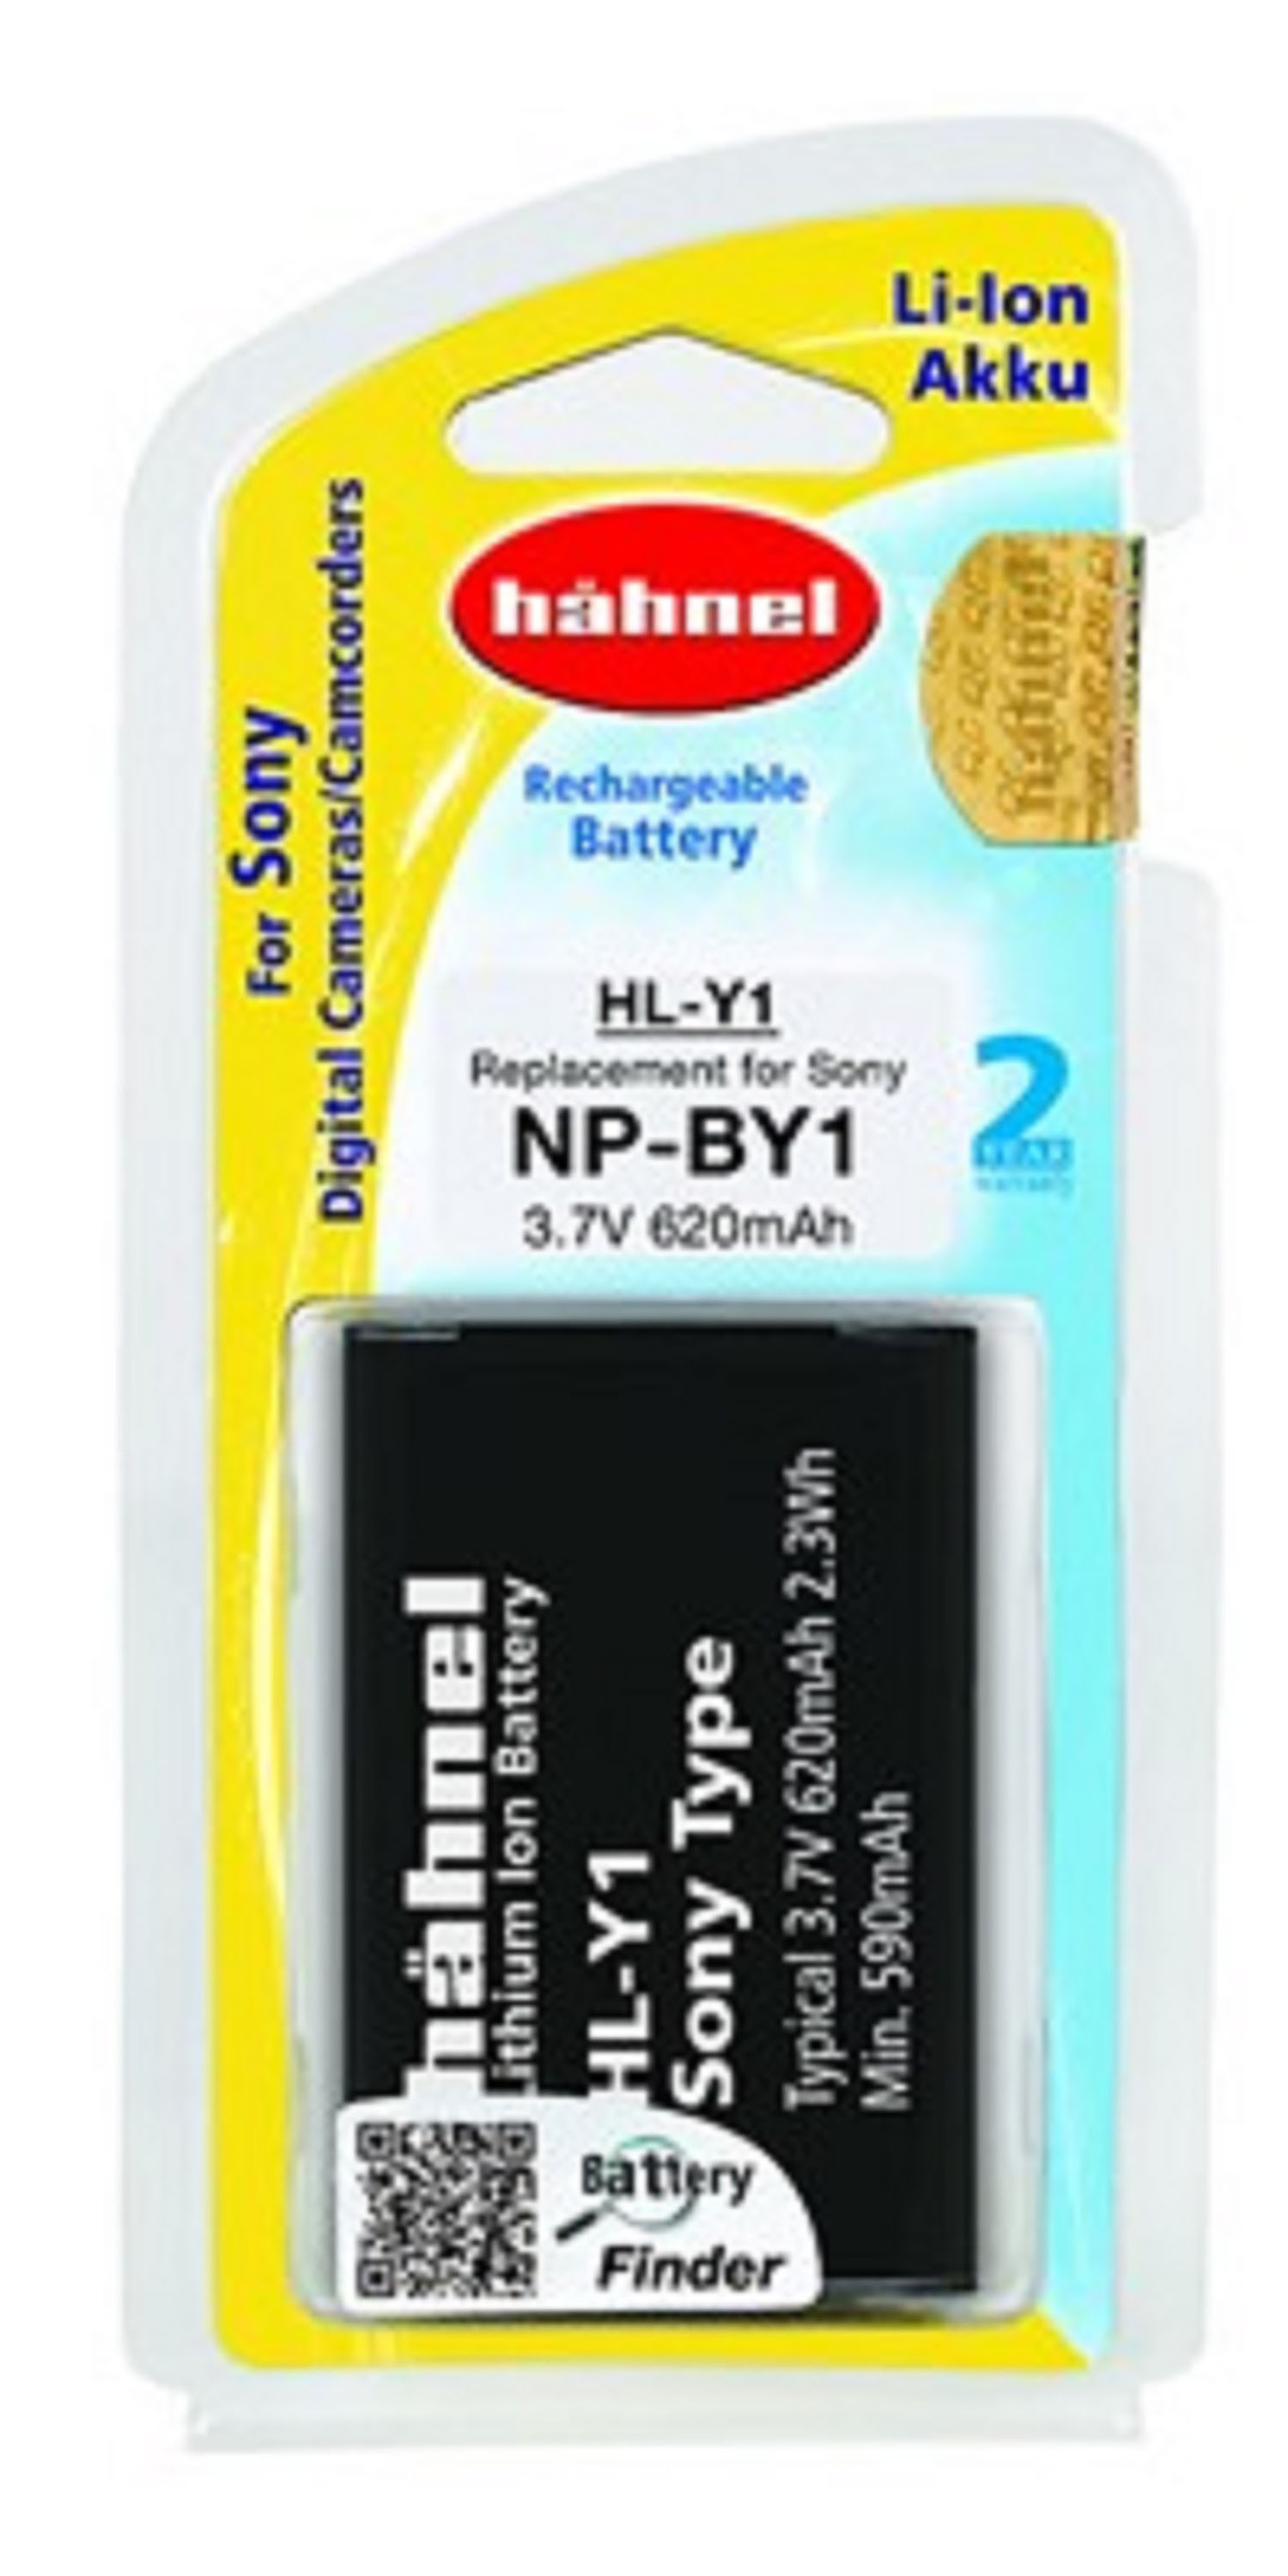 Sony NP-BY1 620 mit Volt, 3.7 Akku Li-Ion kompatibel MOBILOTEC Li-Ion, Hähnel Akku, mAh